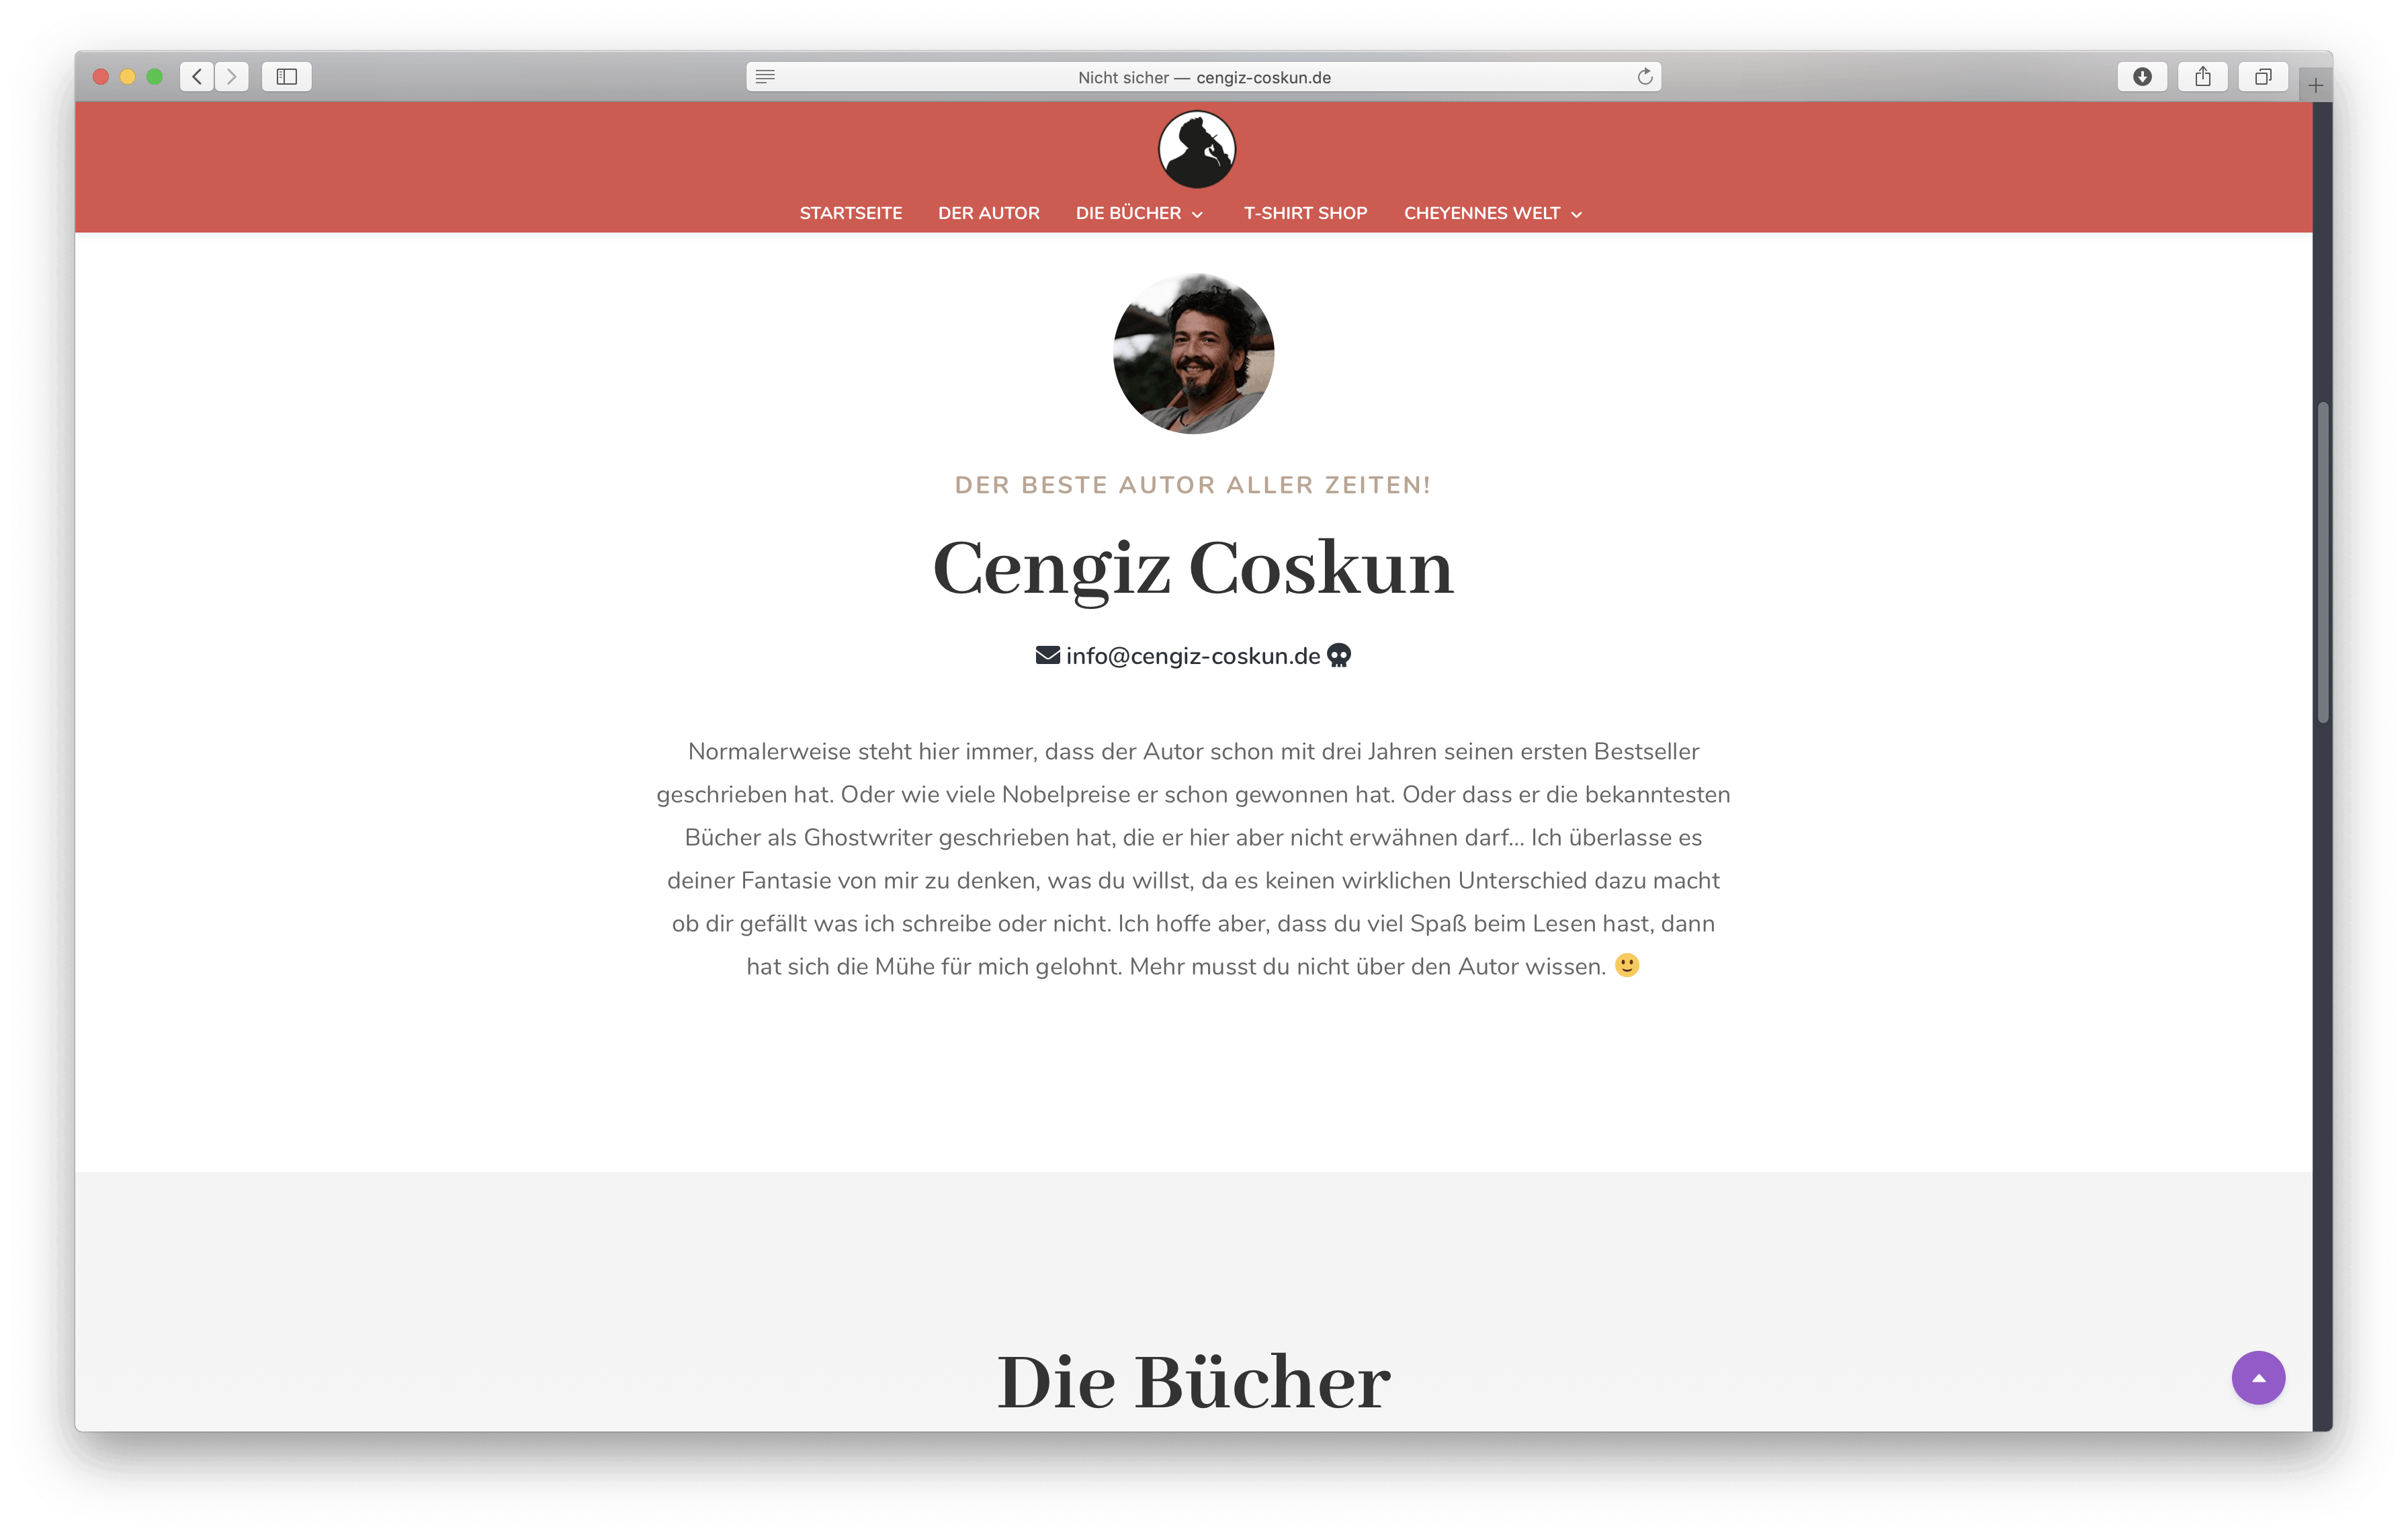 Cengiz Coskun – Autorenseite www.cengiz-coskun.de, Gestaltung und Umsetzung: Elementardesign